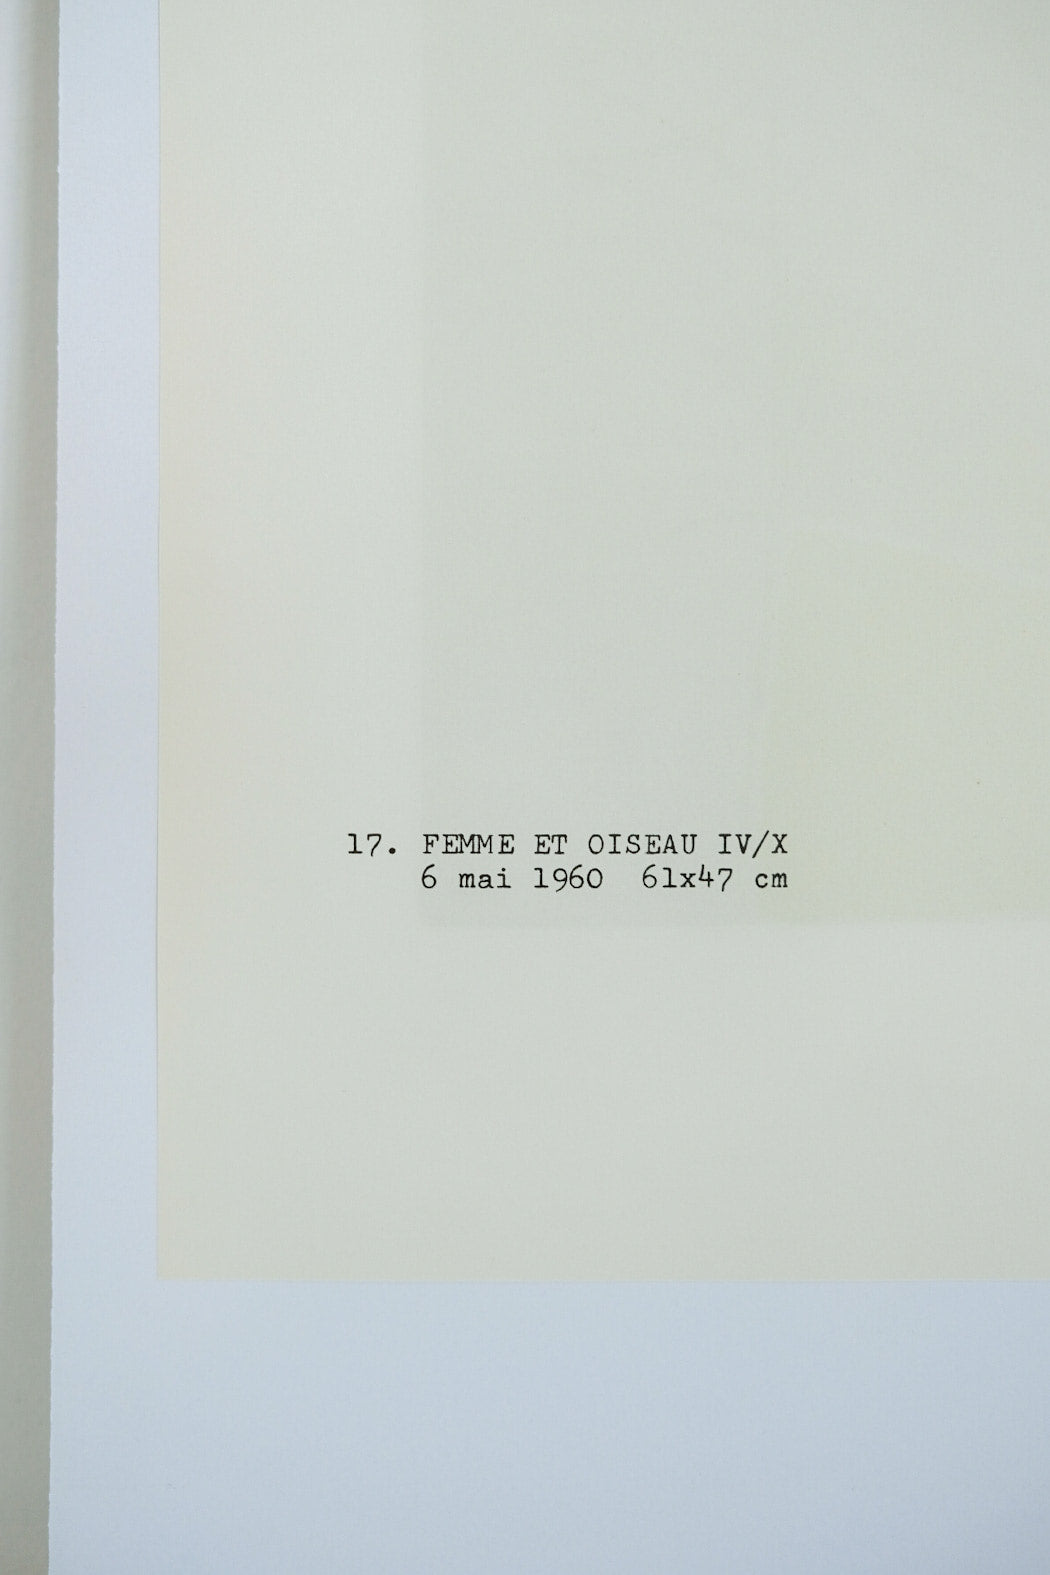 Joan Miro FEMME ET OISEAU IV/X Plate #17